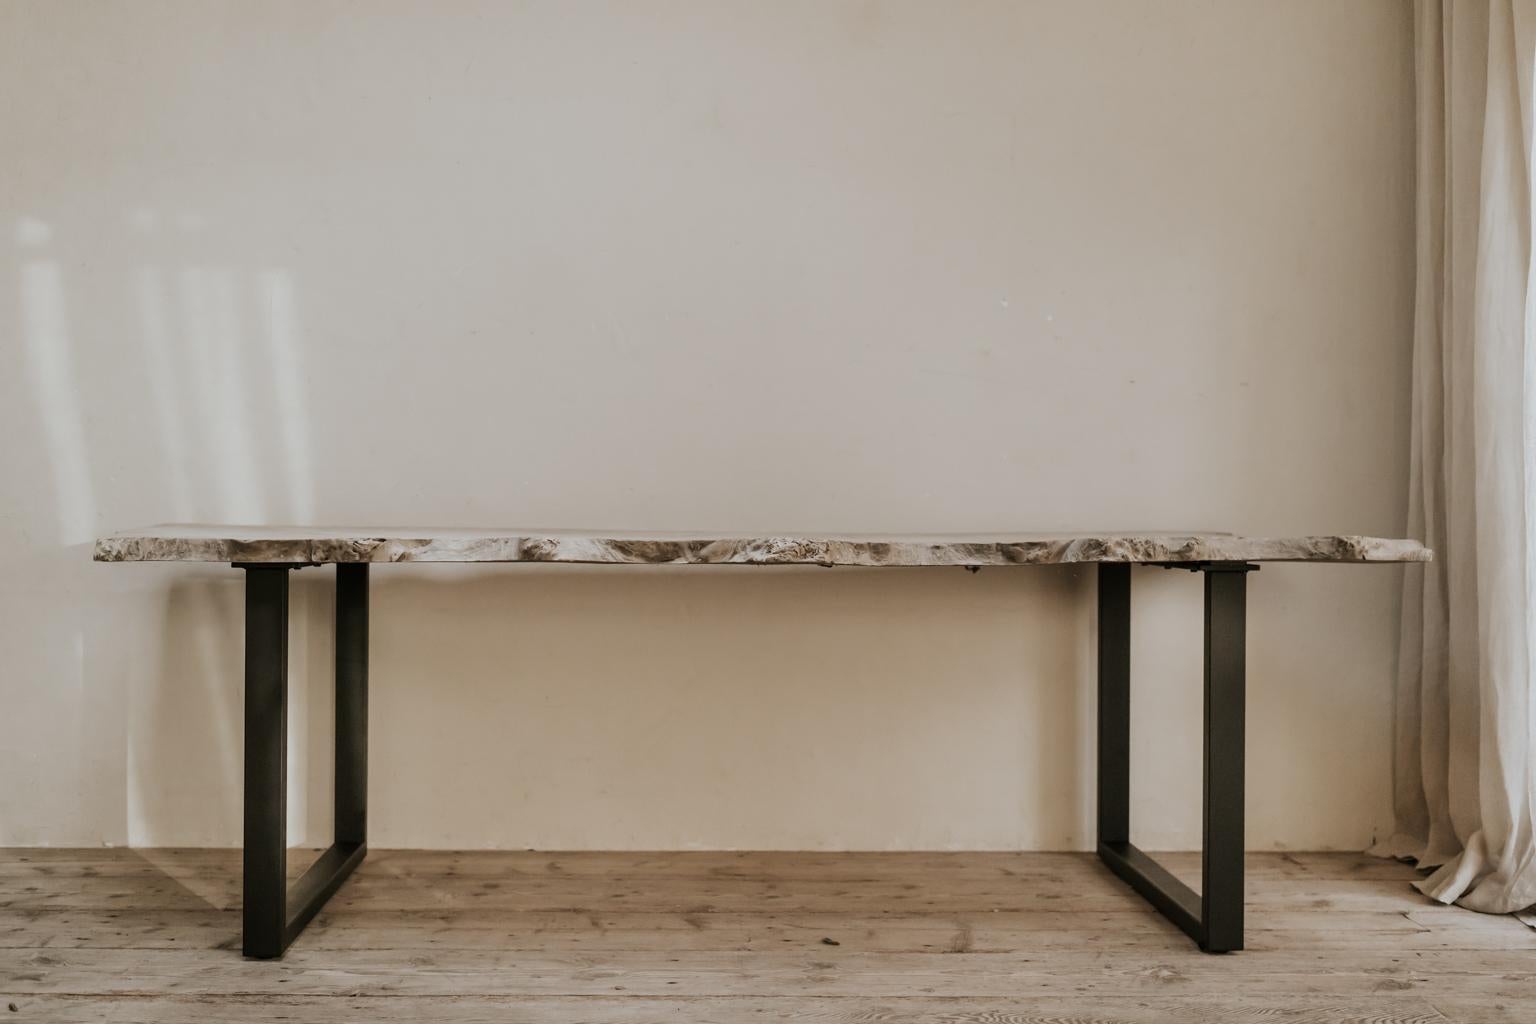 Wir haben ein besonders großes antikes spanisches Stück Pappelholz verwendet, um diesen skurrilen Tisch zu kreieren, der auf einem modernen Eisensockel montiert ist und sich wunderbar als Esstisch, Schreibtisch oder Konferenztisch eignet...